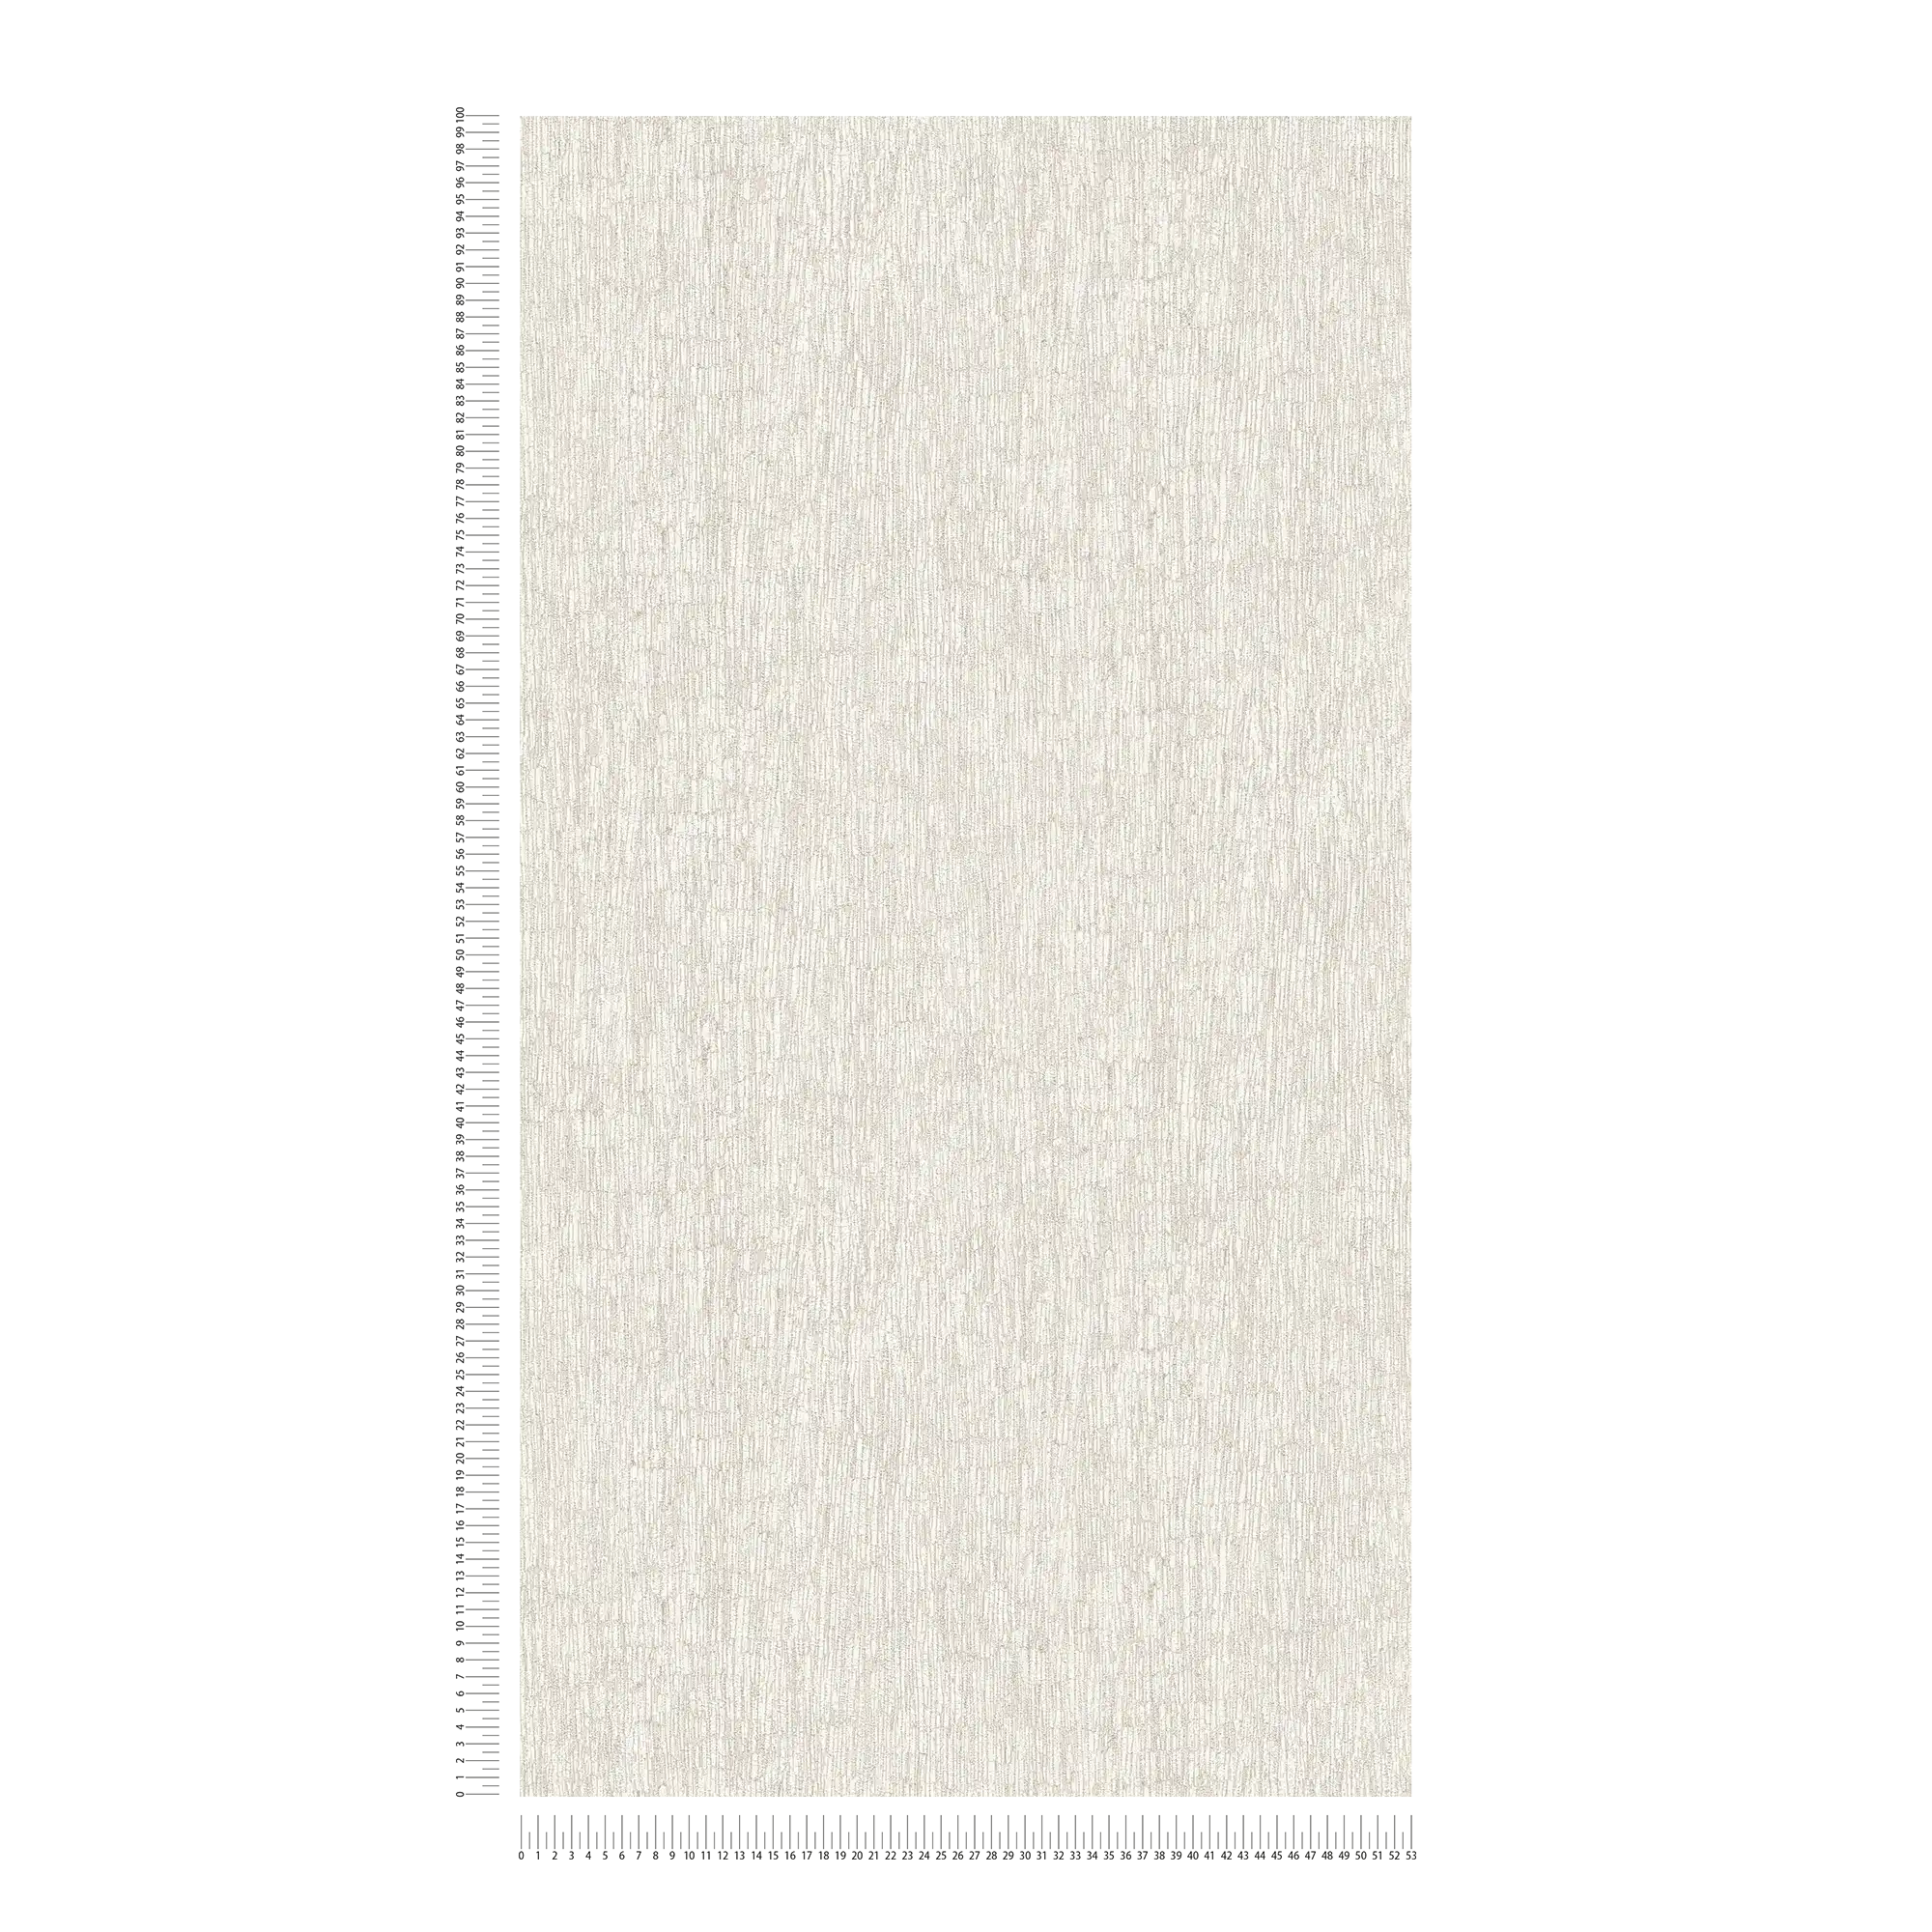             papier peint en papier intissé aspect textile légèrement brillant - blanc, gris, argenté
        